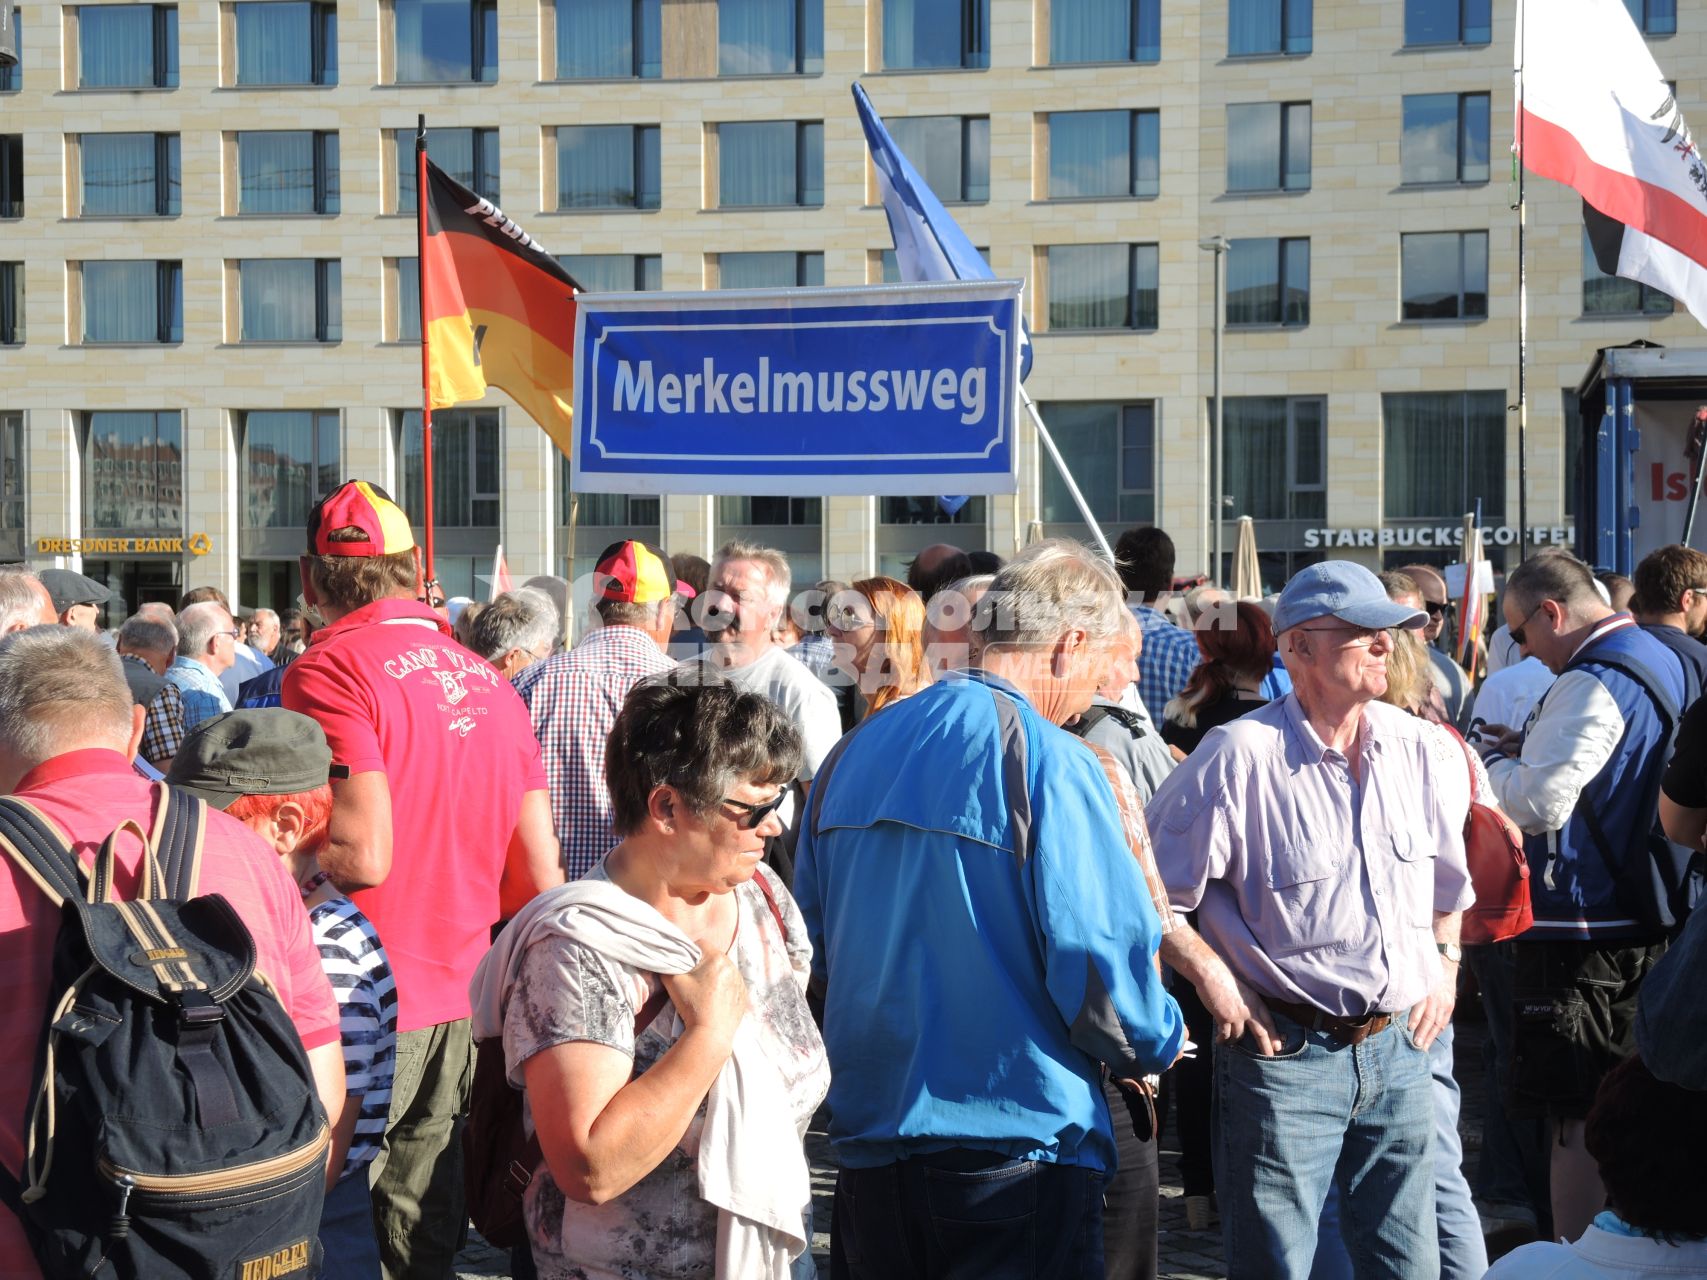 Германия,Дрезден.  Митингующие на улице города. Плакат`Меркель должна уйти`.